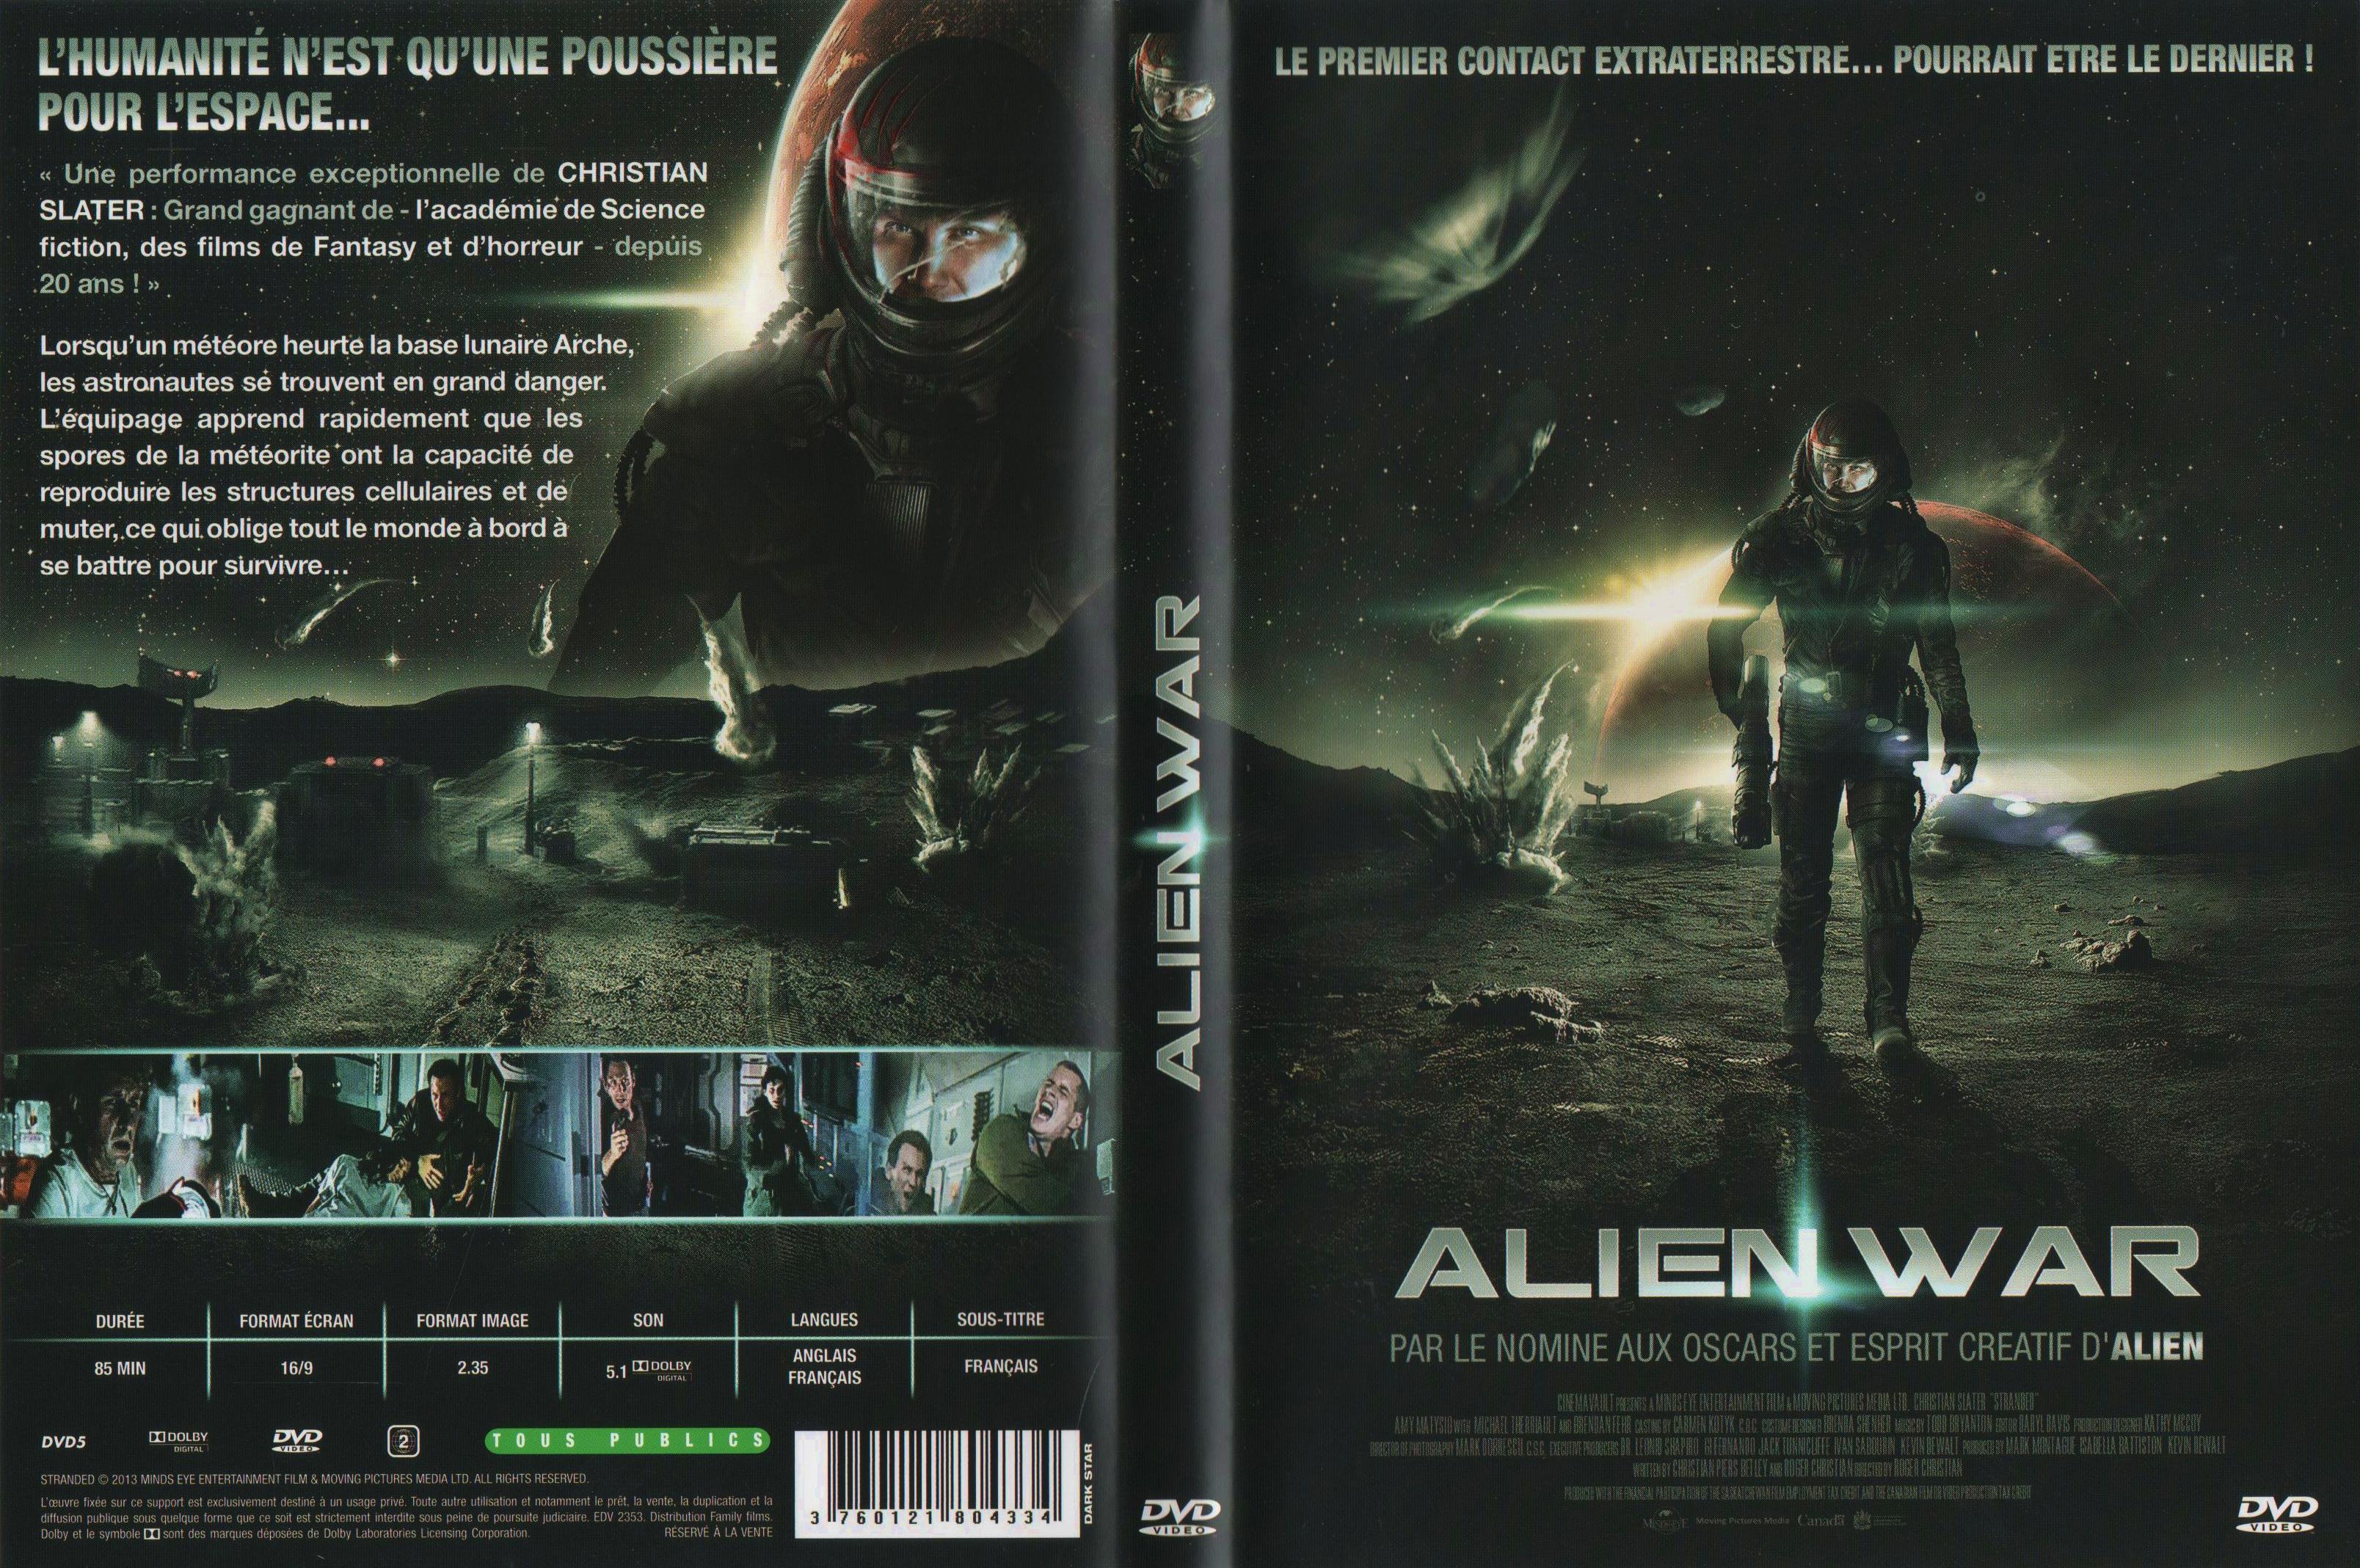 Jaquette DVD Alien war